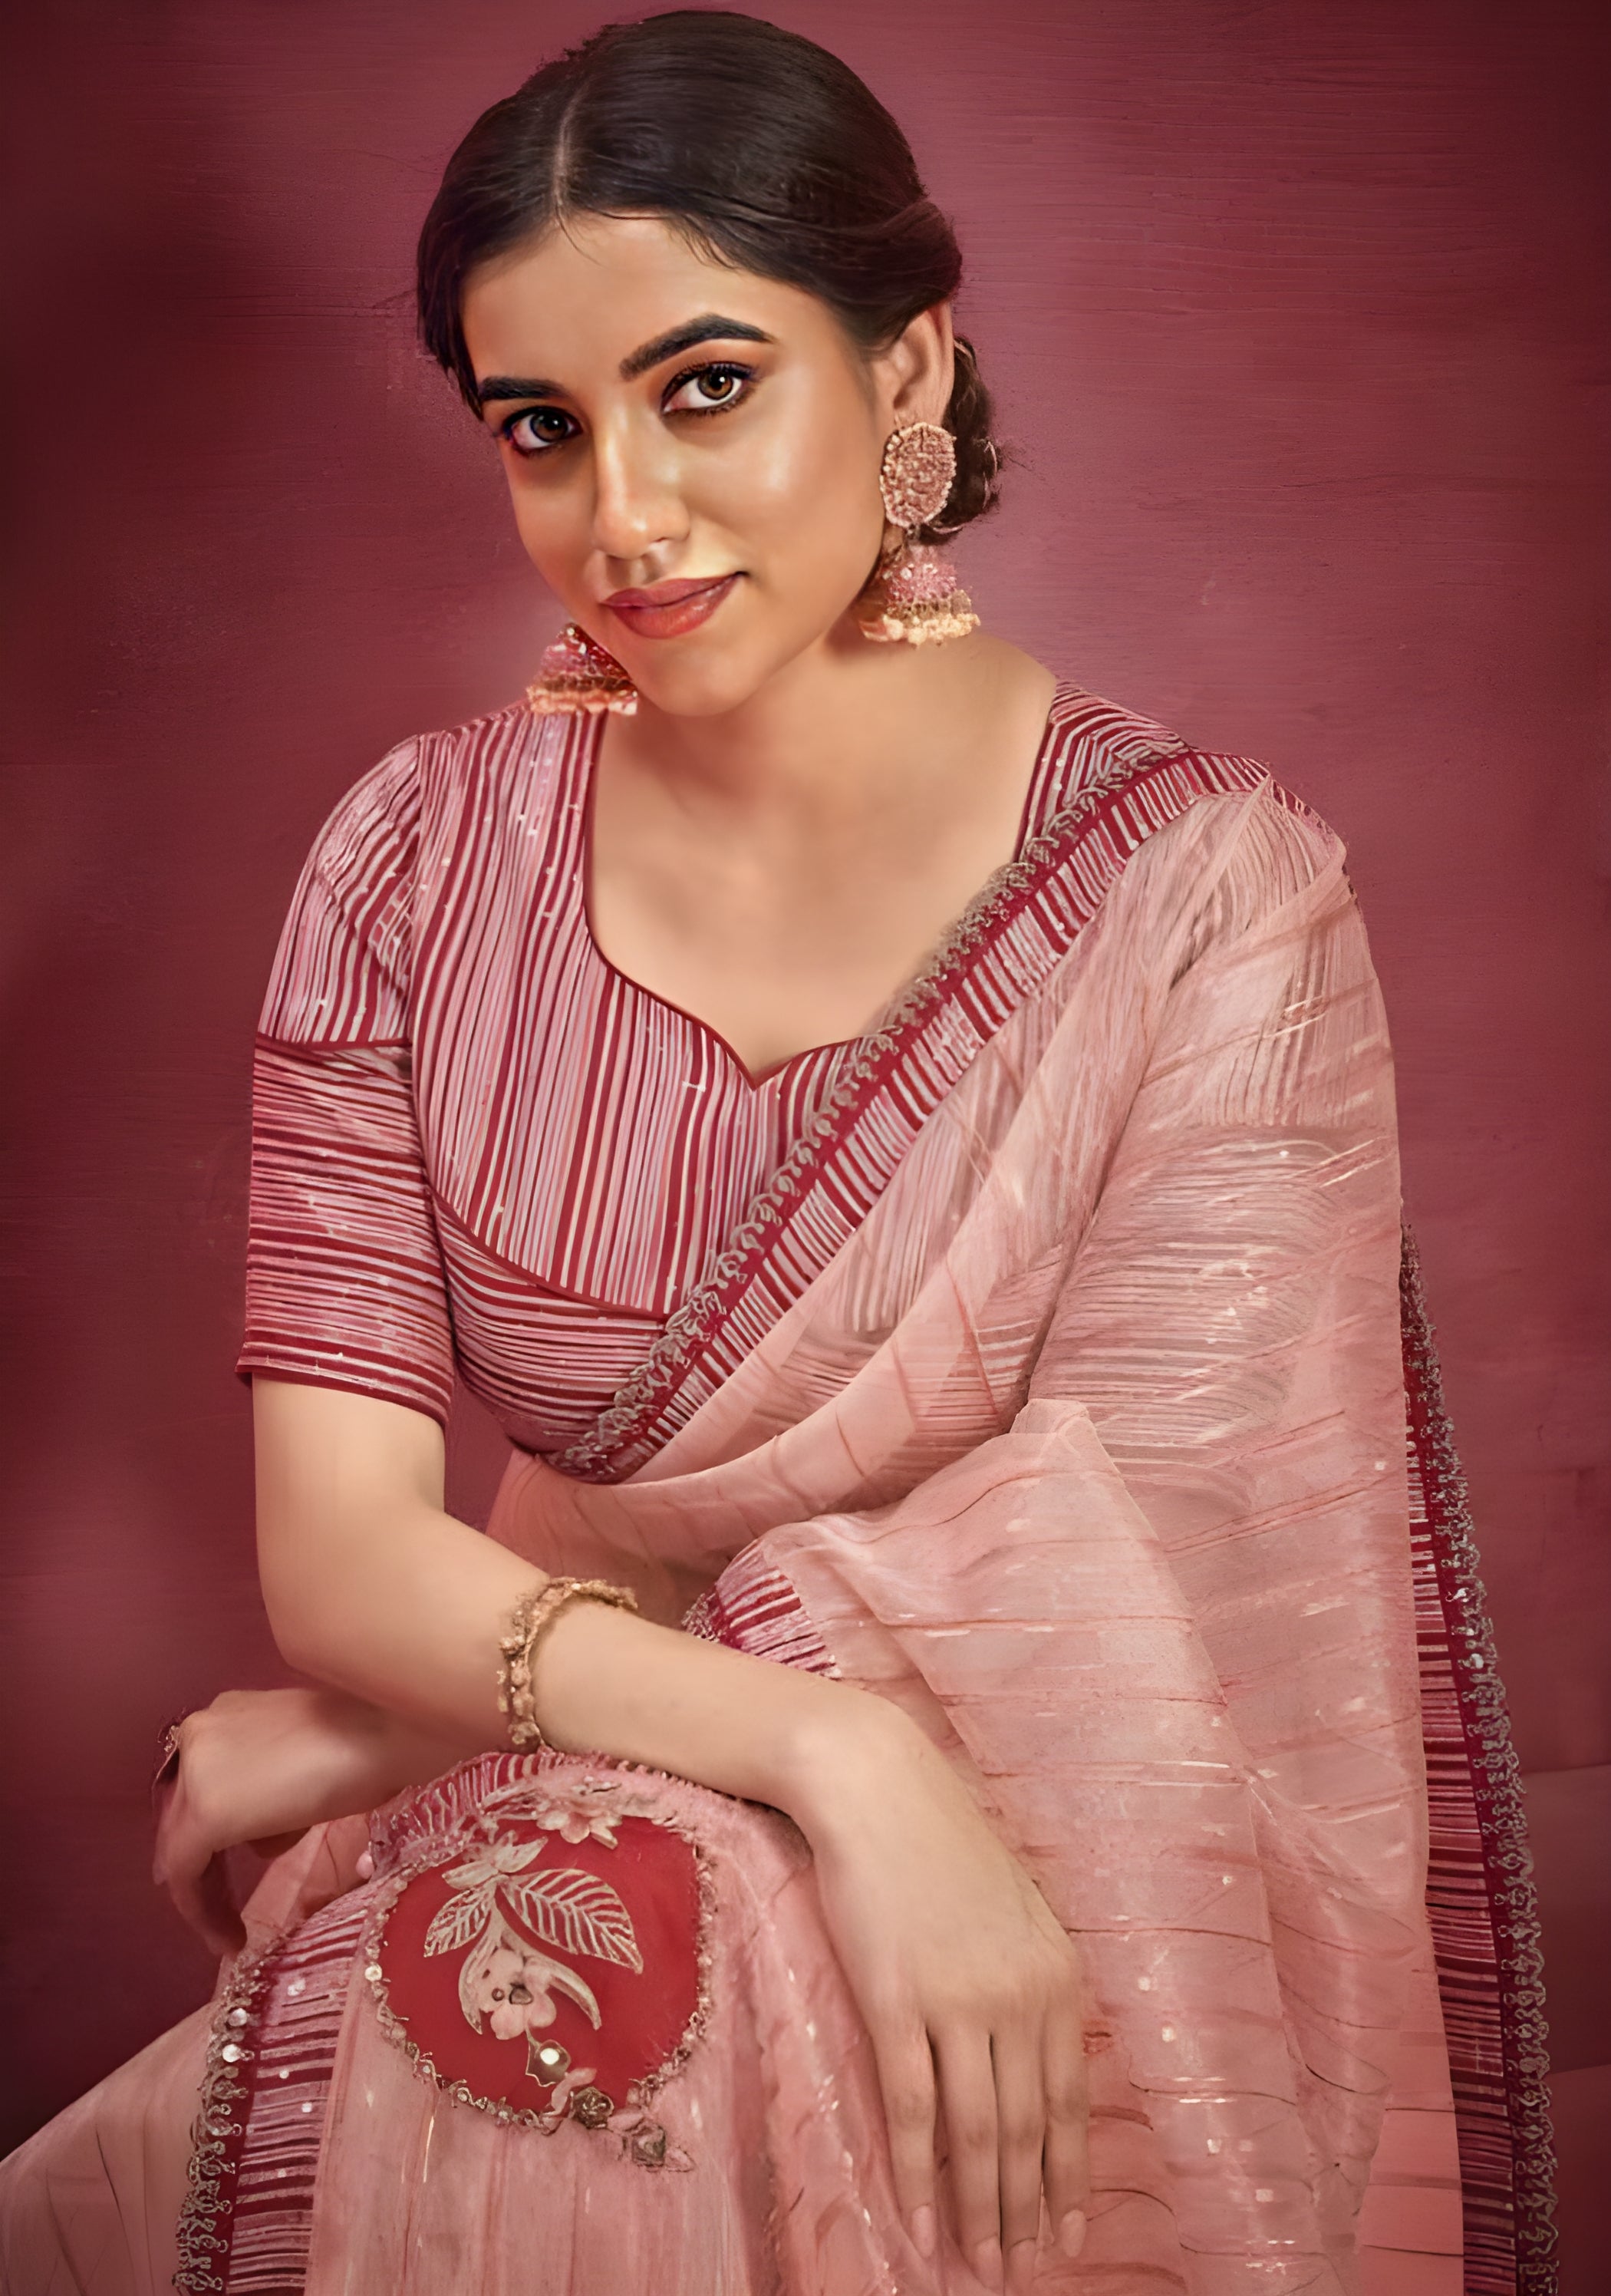 Embroidered Patterned Organza Designer Saree Pink - Sakhi Fashions